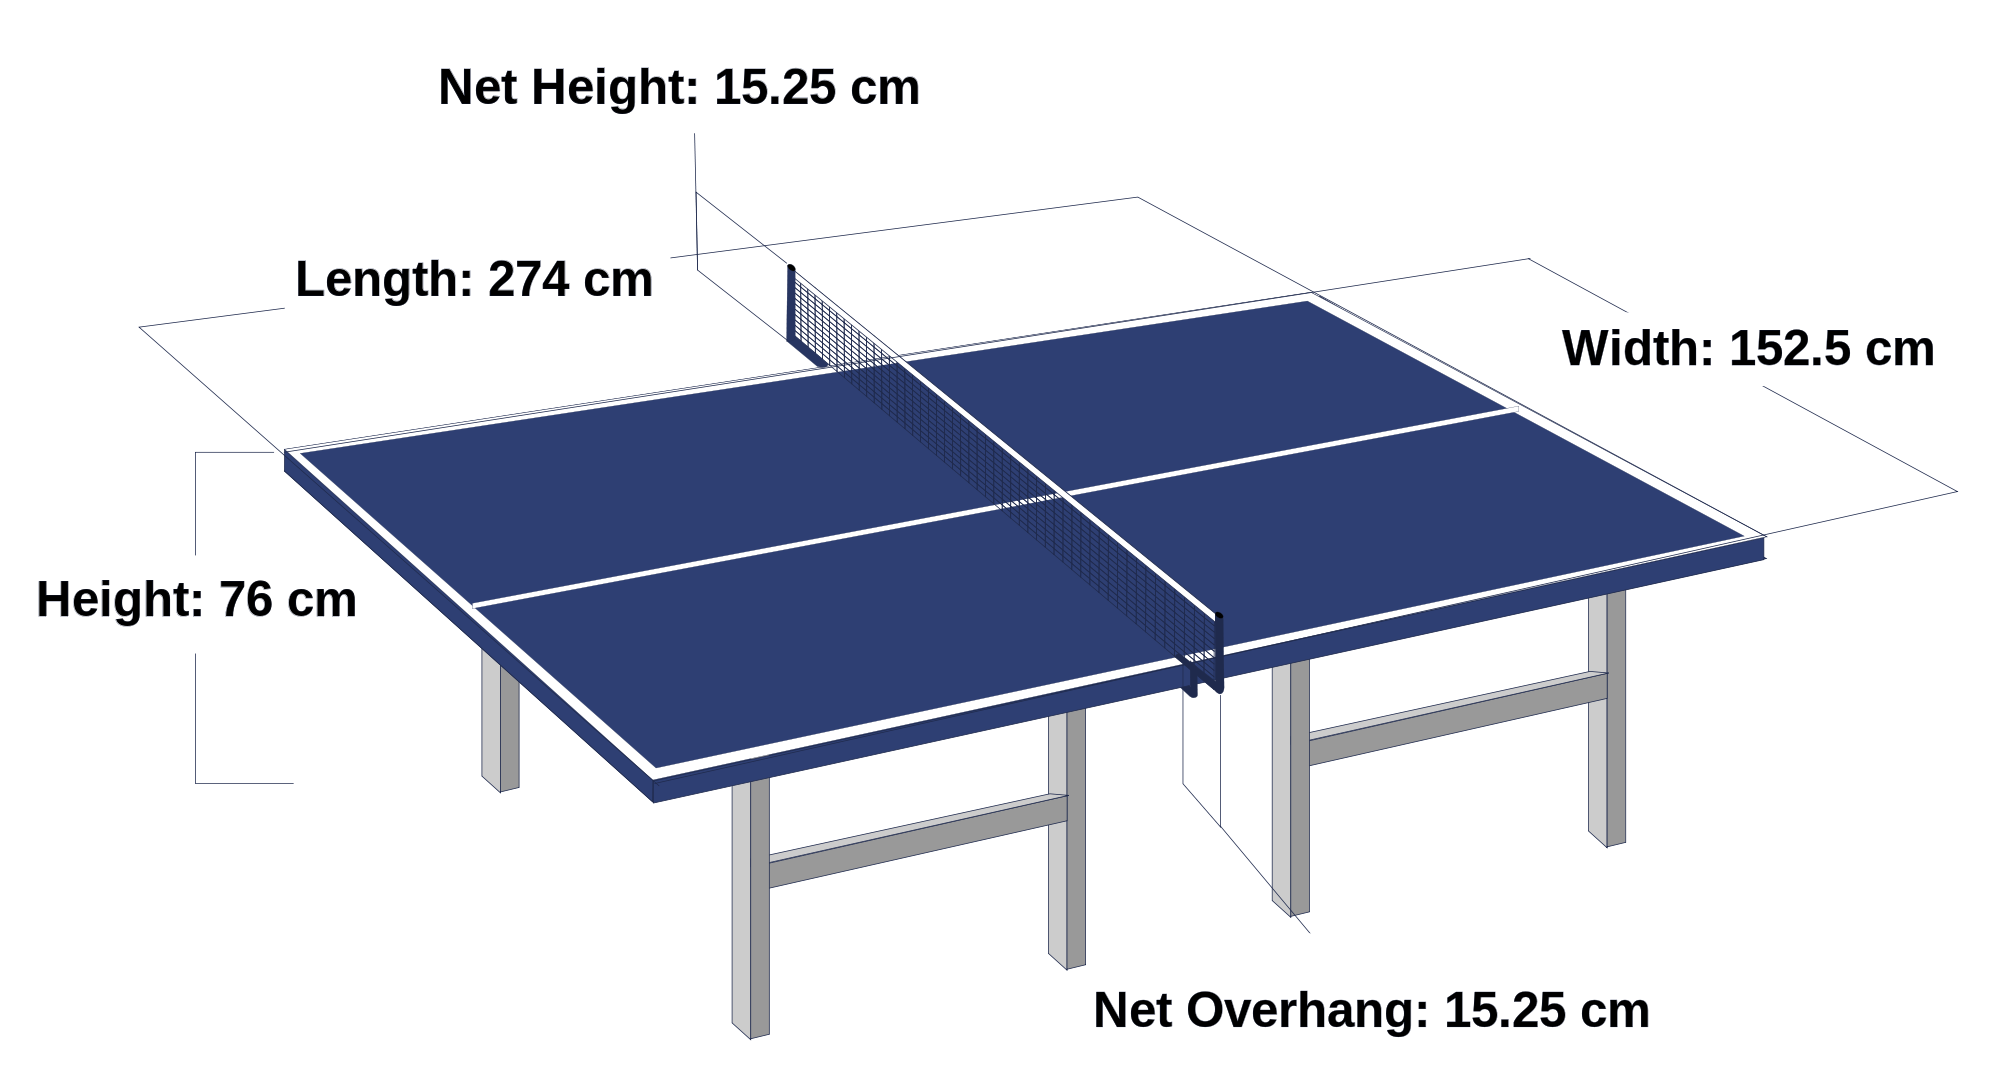 Теннис настольный план. Размеры теннисного стола для настольного тенниса стандарт. Размеры настольного теннисного стола стандарт. Размер теннисного стола для настольного тенниса. Габариты теннисного стола.